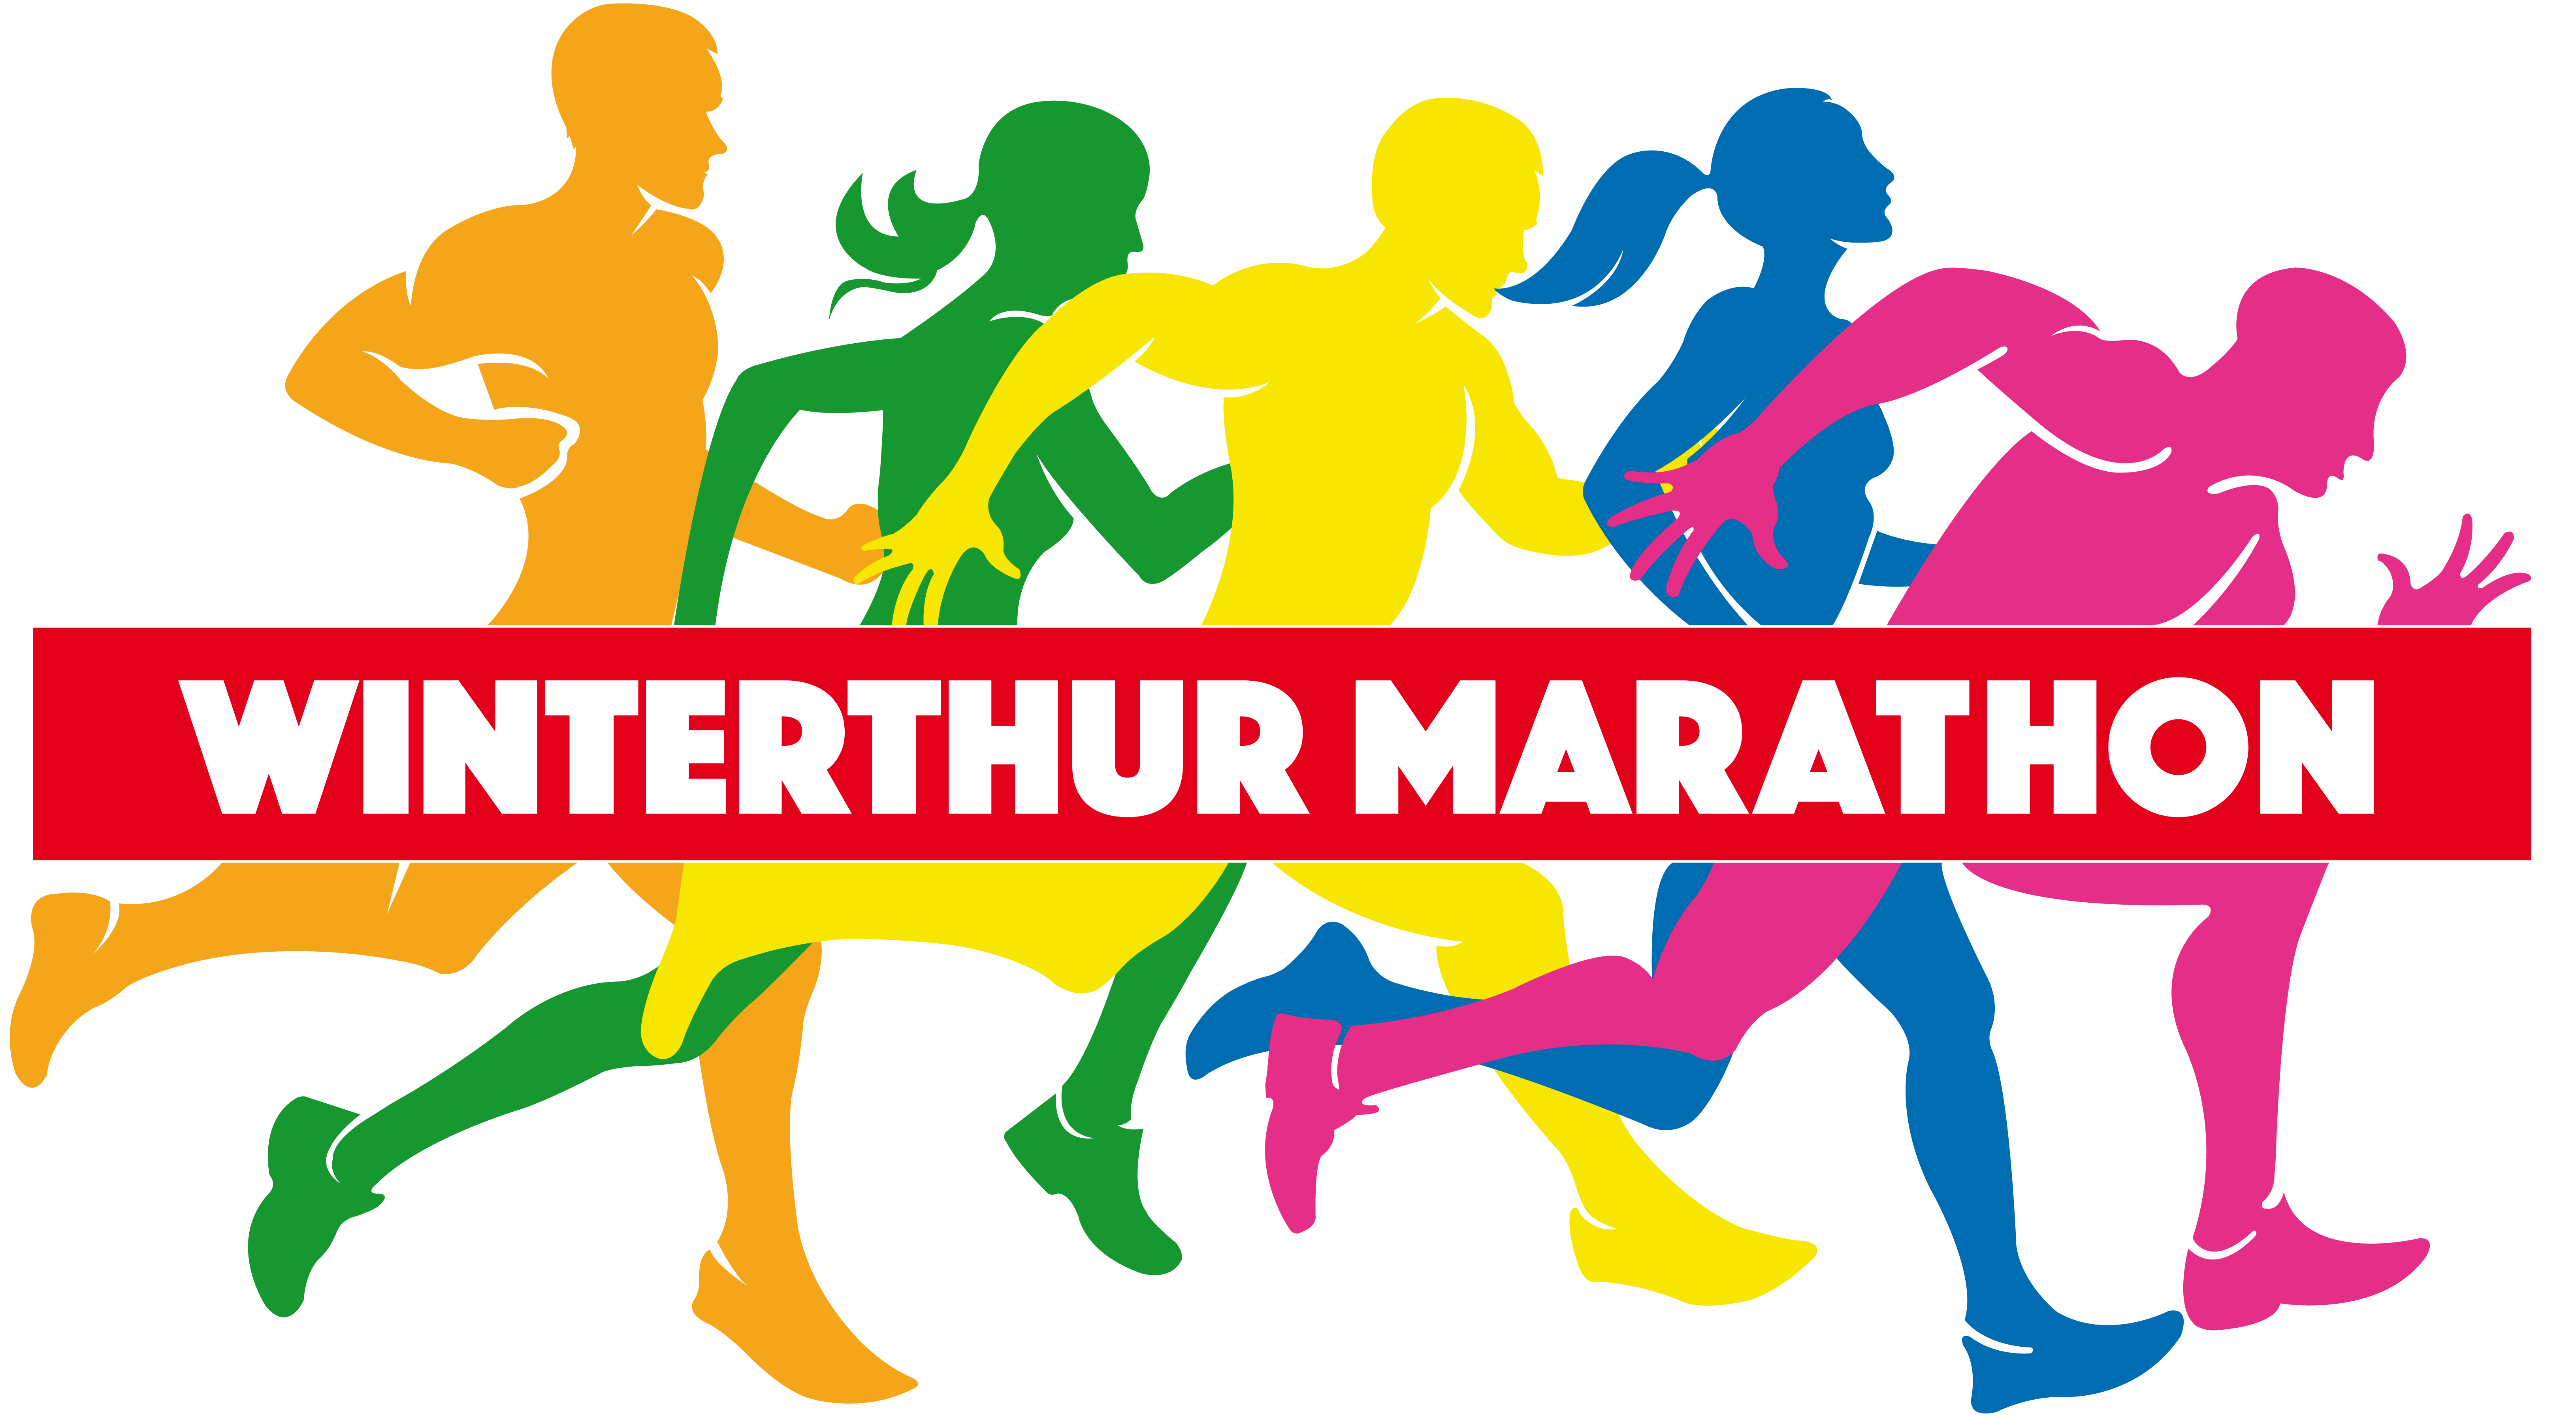 22. Winterthur Marathon